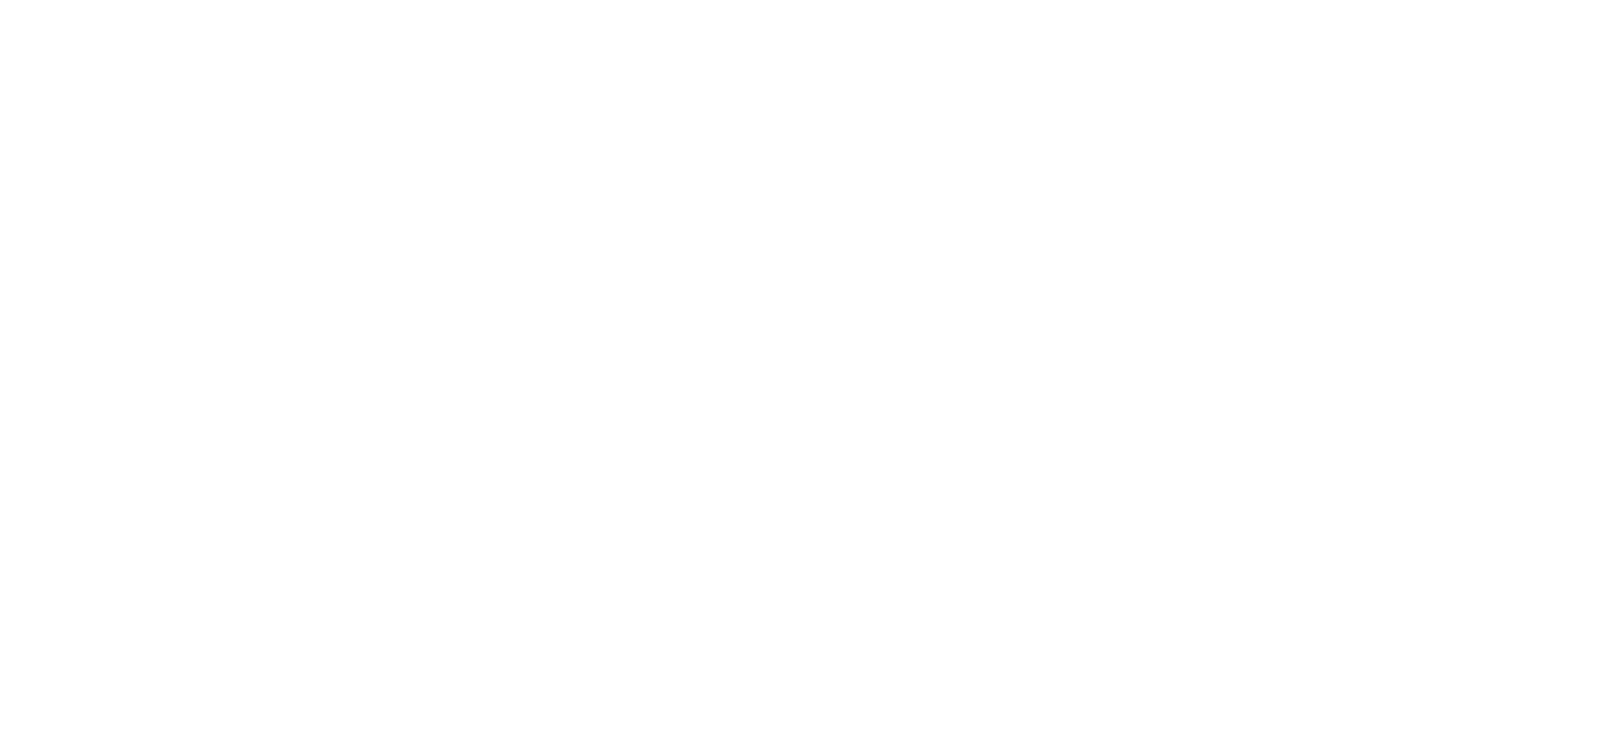 ECMI 2023